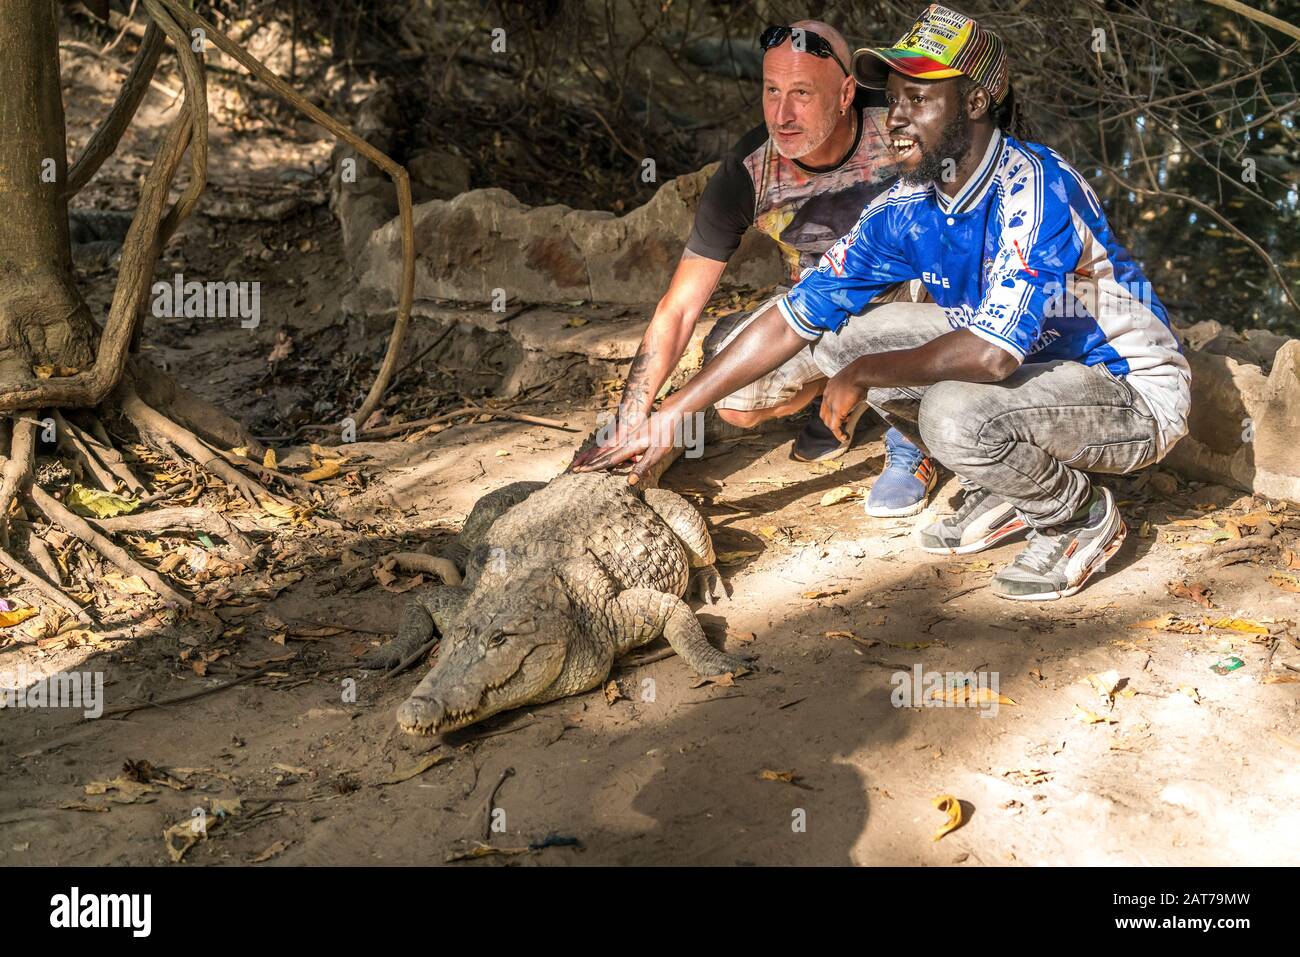 Besucher streicheln ein Krokodil am heiligen Krokodilbecken von Kachikally, Bakau, Gambia, Westafrika  |  visitor touching a crocodile at the sacred K Stock Photo